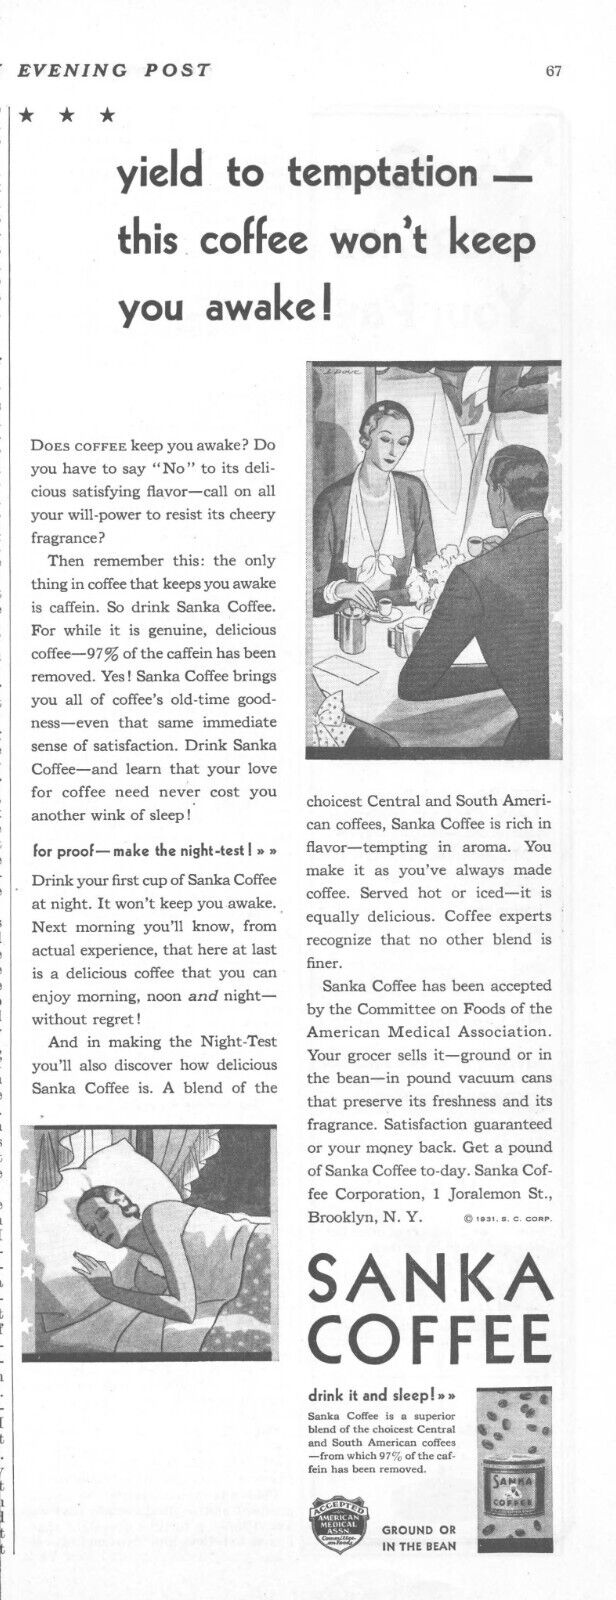 1931 Sanka Coffee Vintage Print Ad Drink It And Sleep Decaffeinated